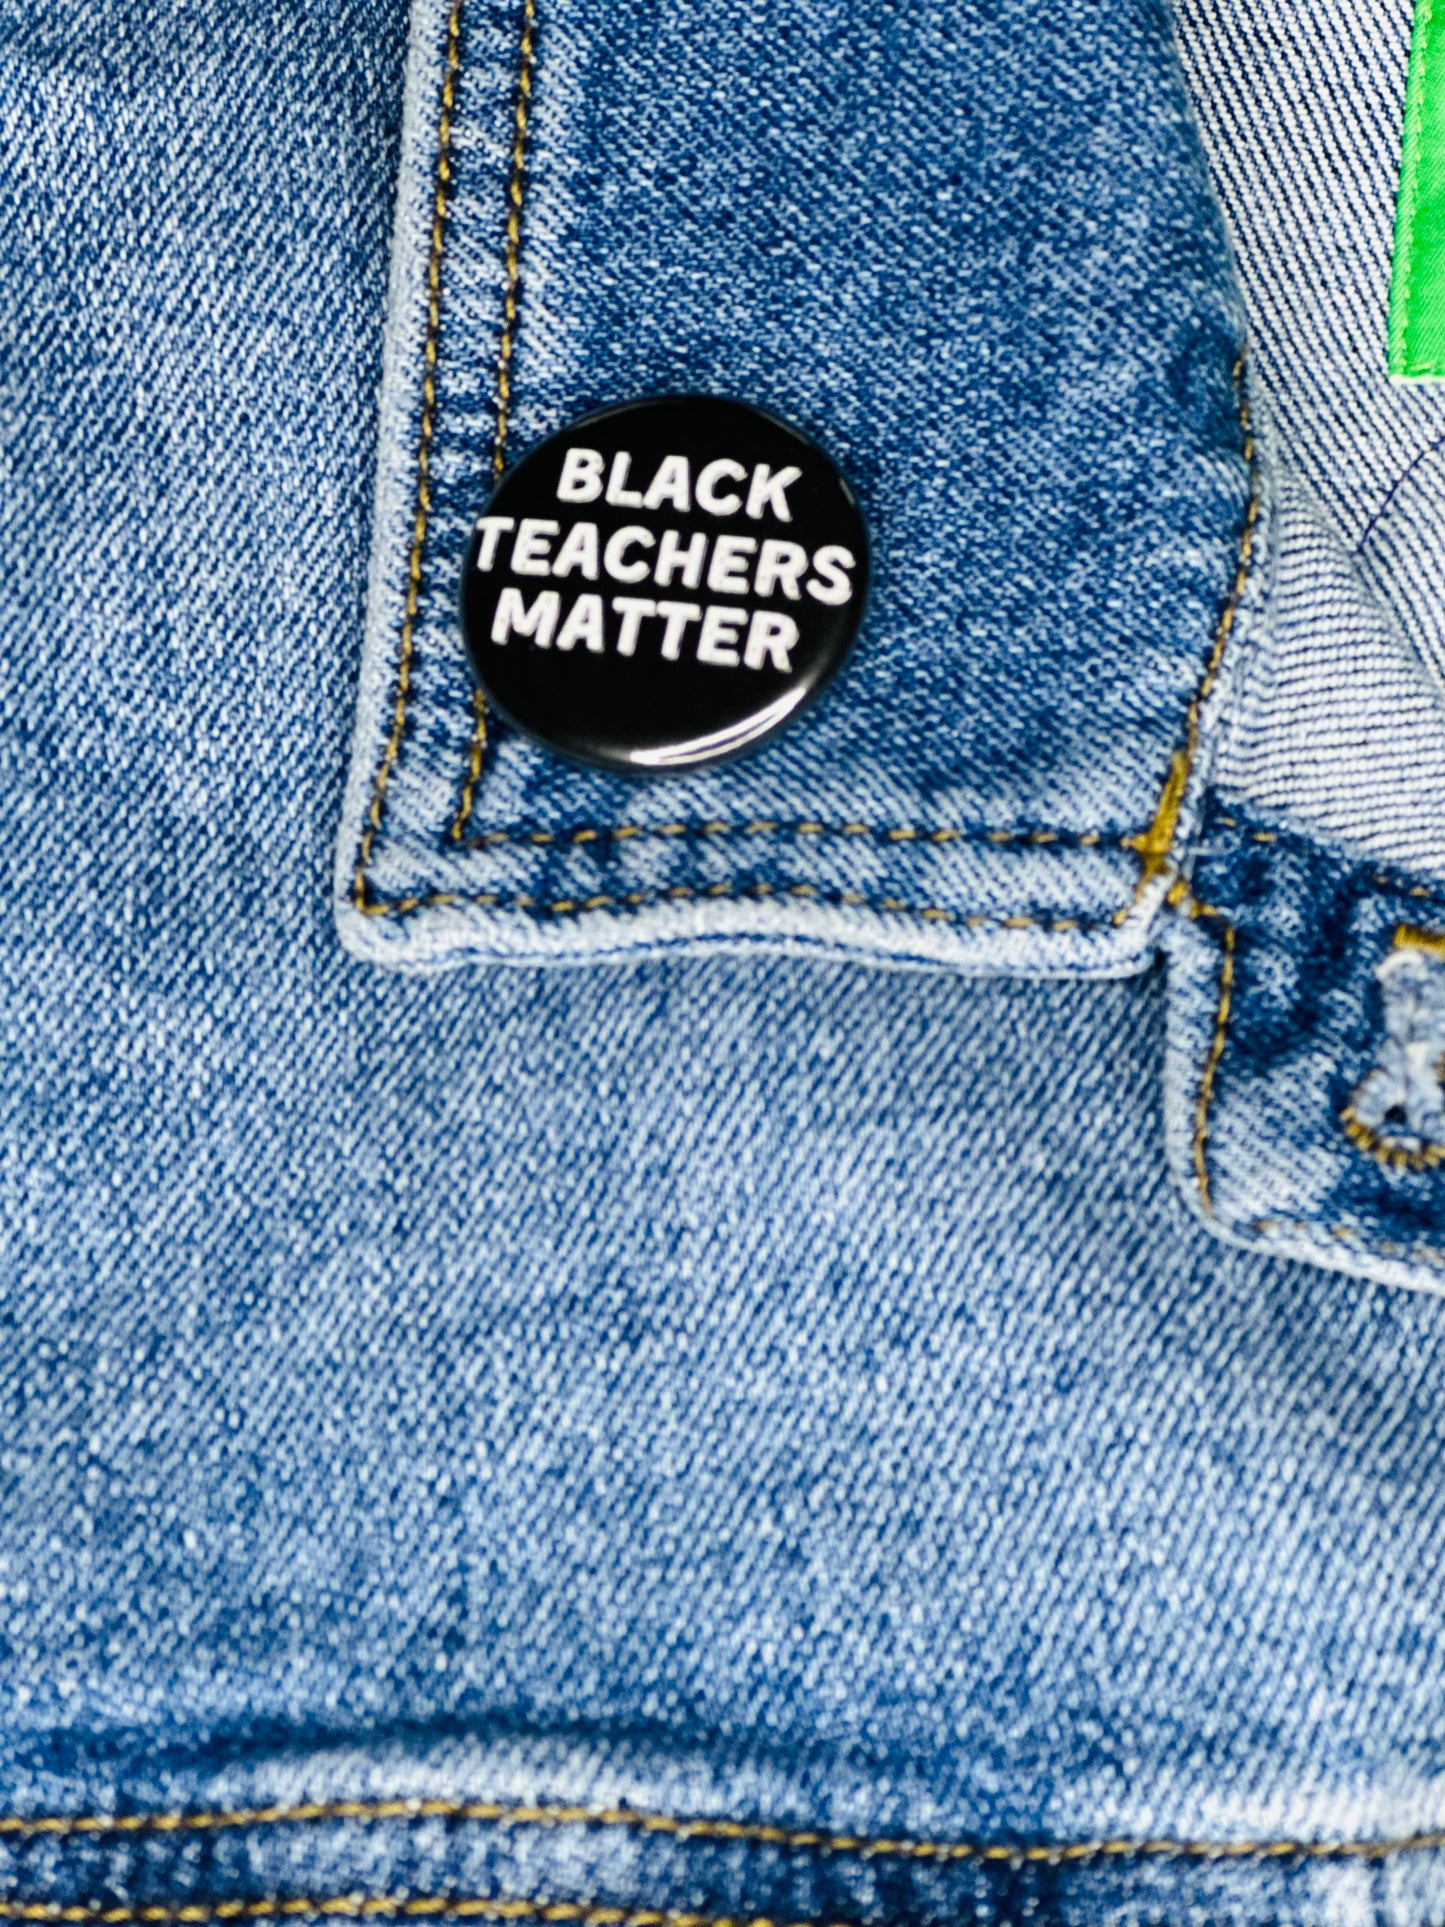 Pères noirs Black History Matters Pinback Button